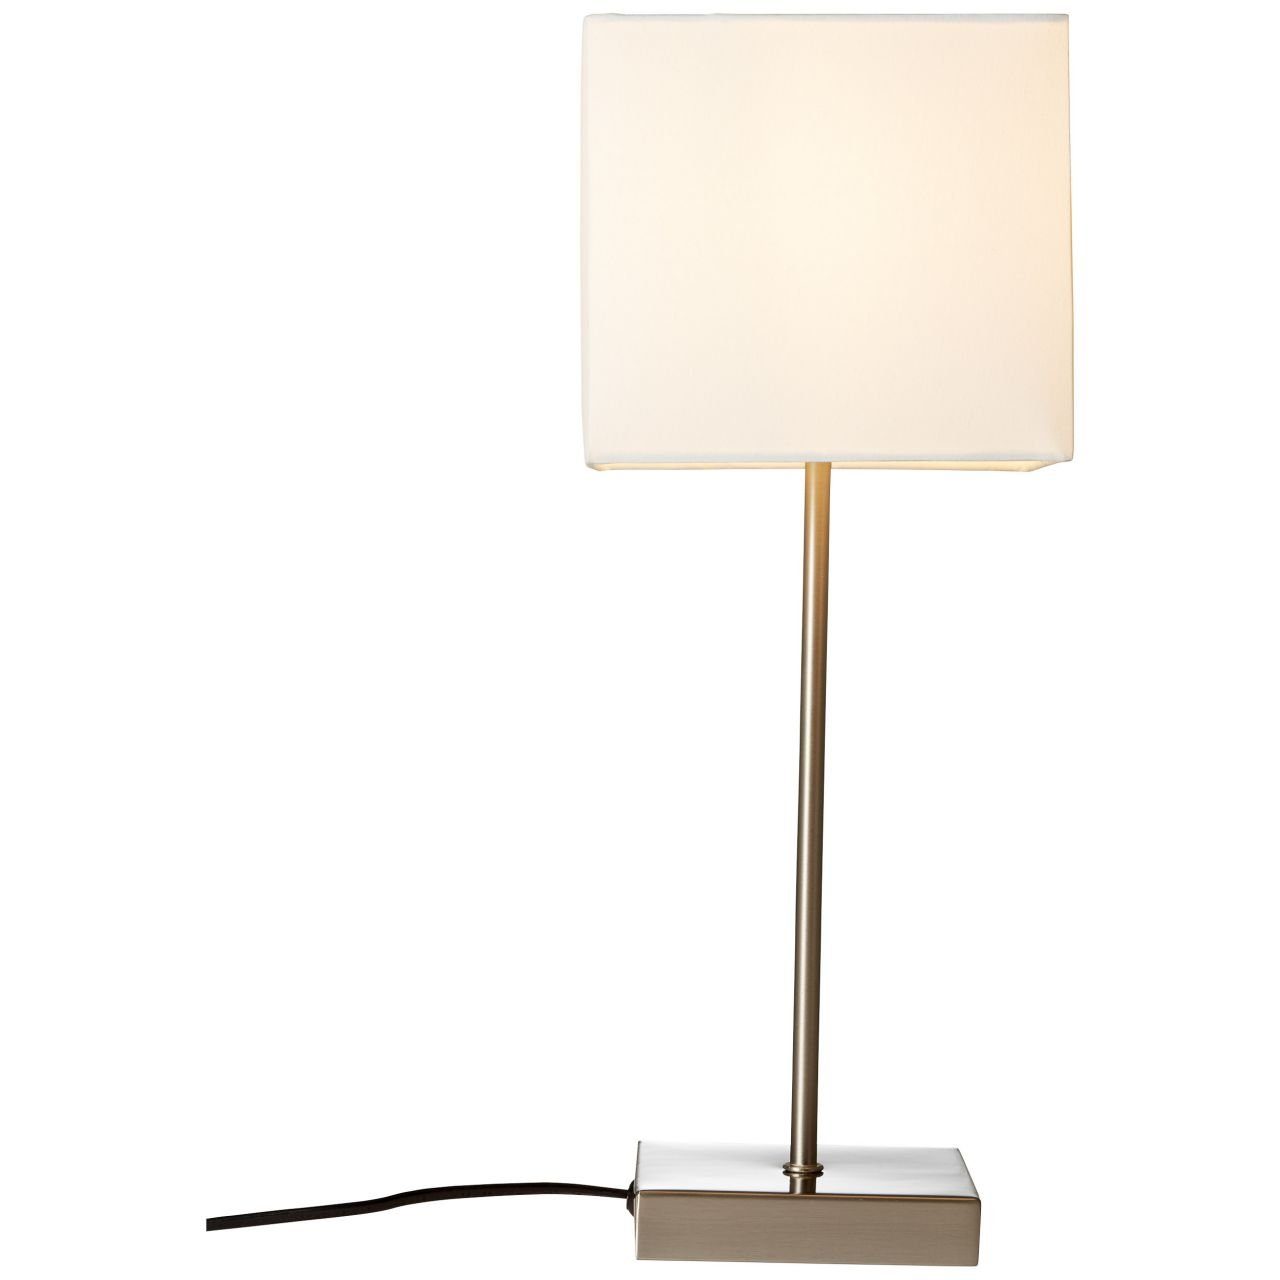 40W, Brilliant Lampe Aglae geeign Aglae, E14, weiß Touchschalter Tischleuchte Tischleuchte D45, 1x